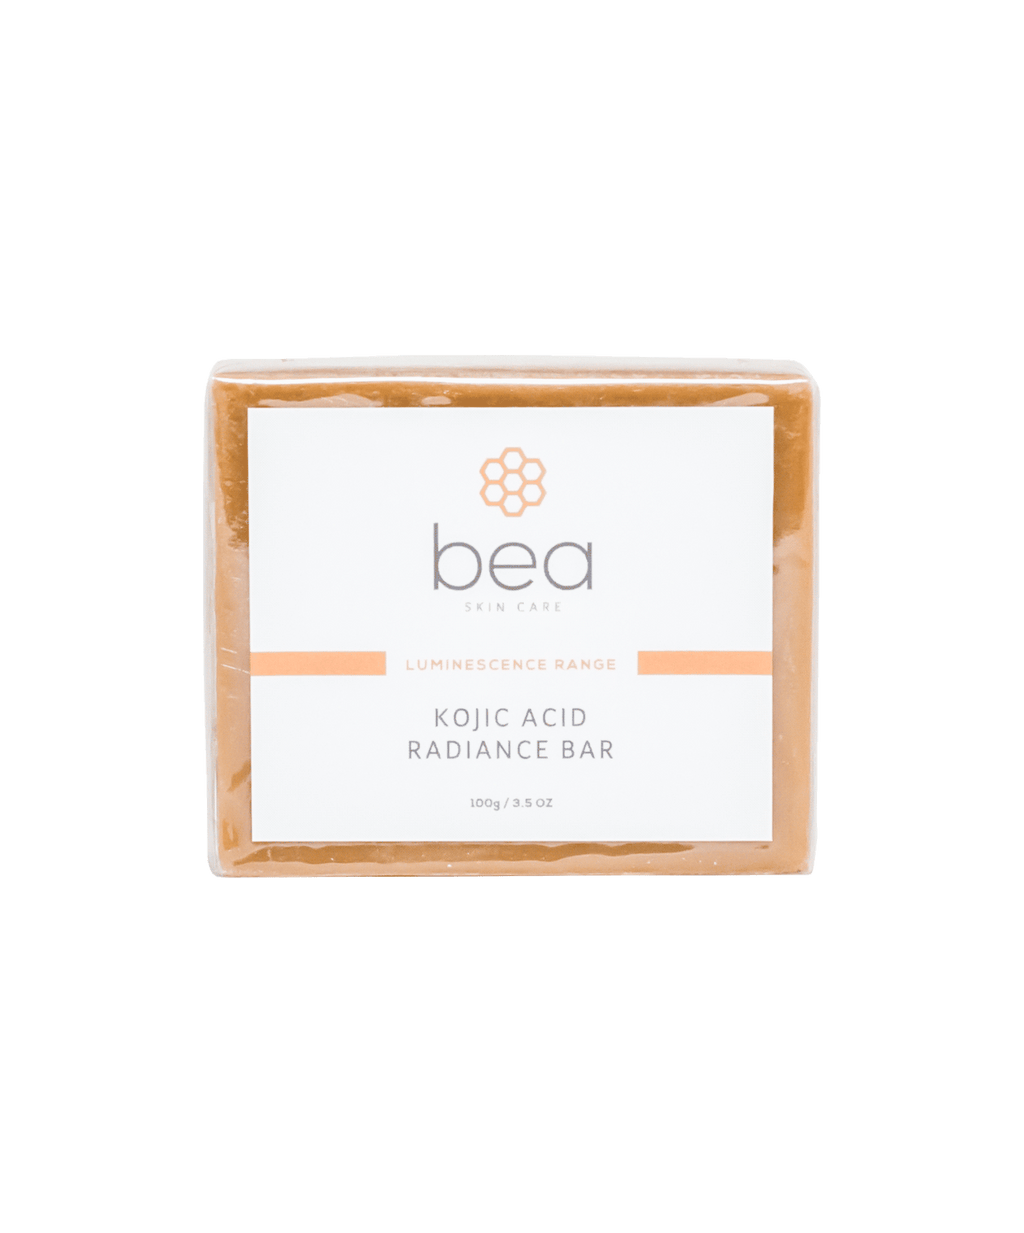 Shop All - Luminescence Range - bea Skin Care – bea Skin Care